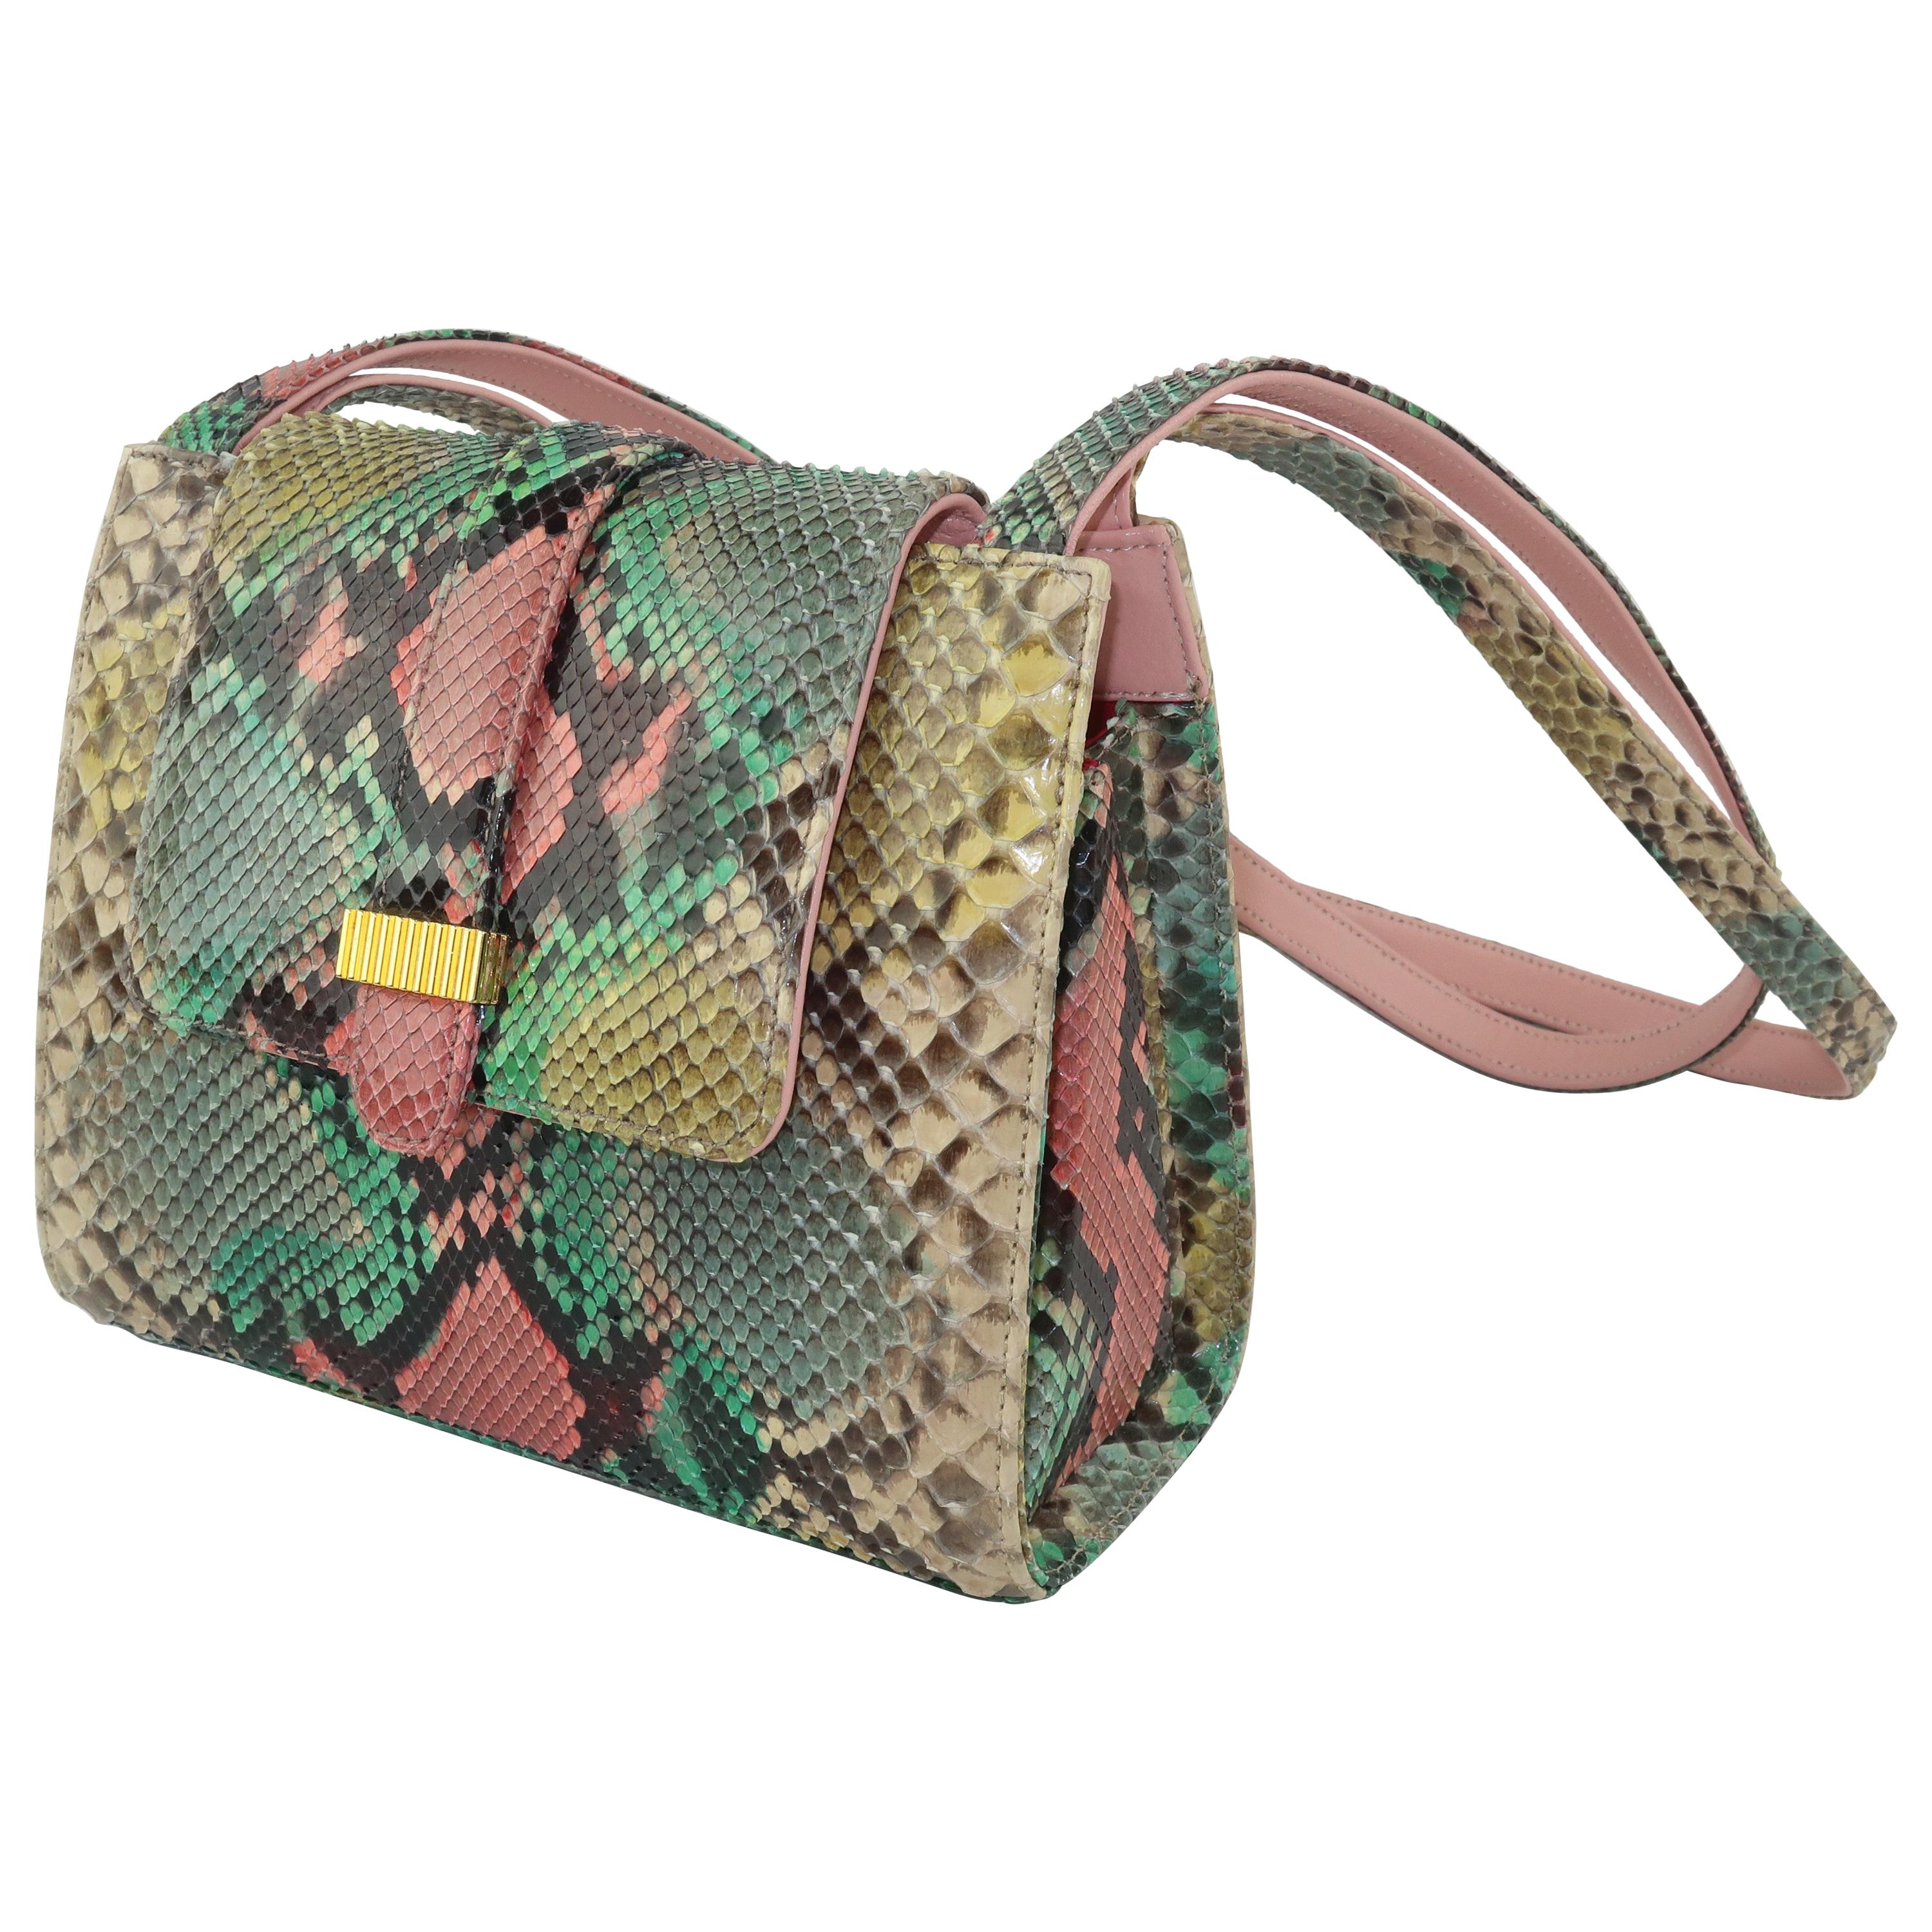 Kleinberg Sherrill Multi Color Python Snakeskin Handbag